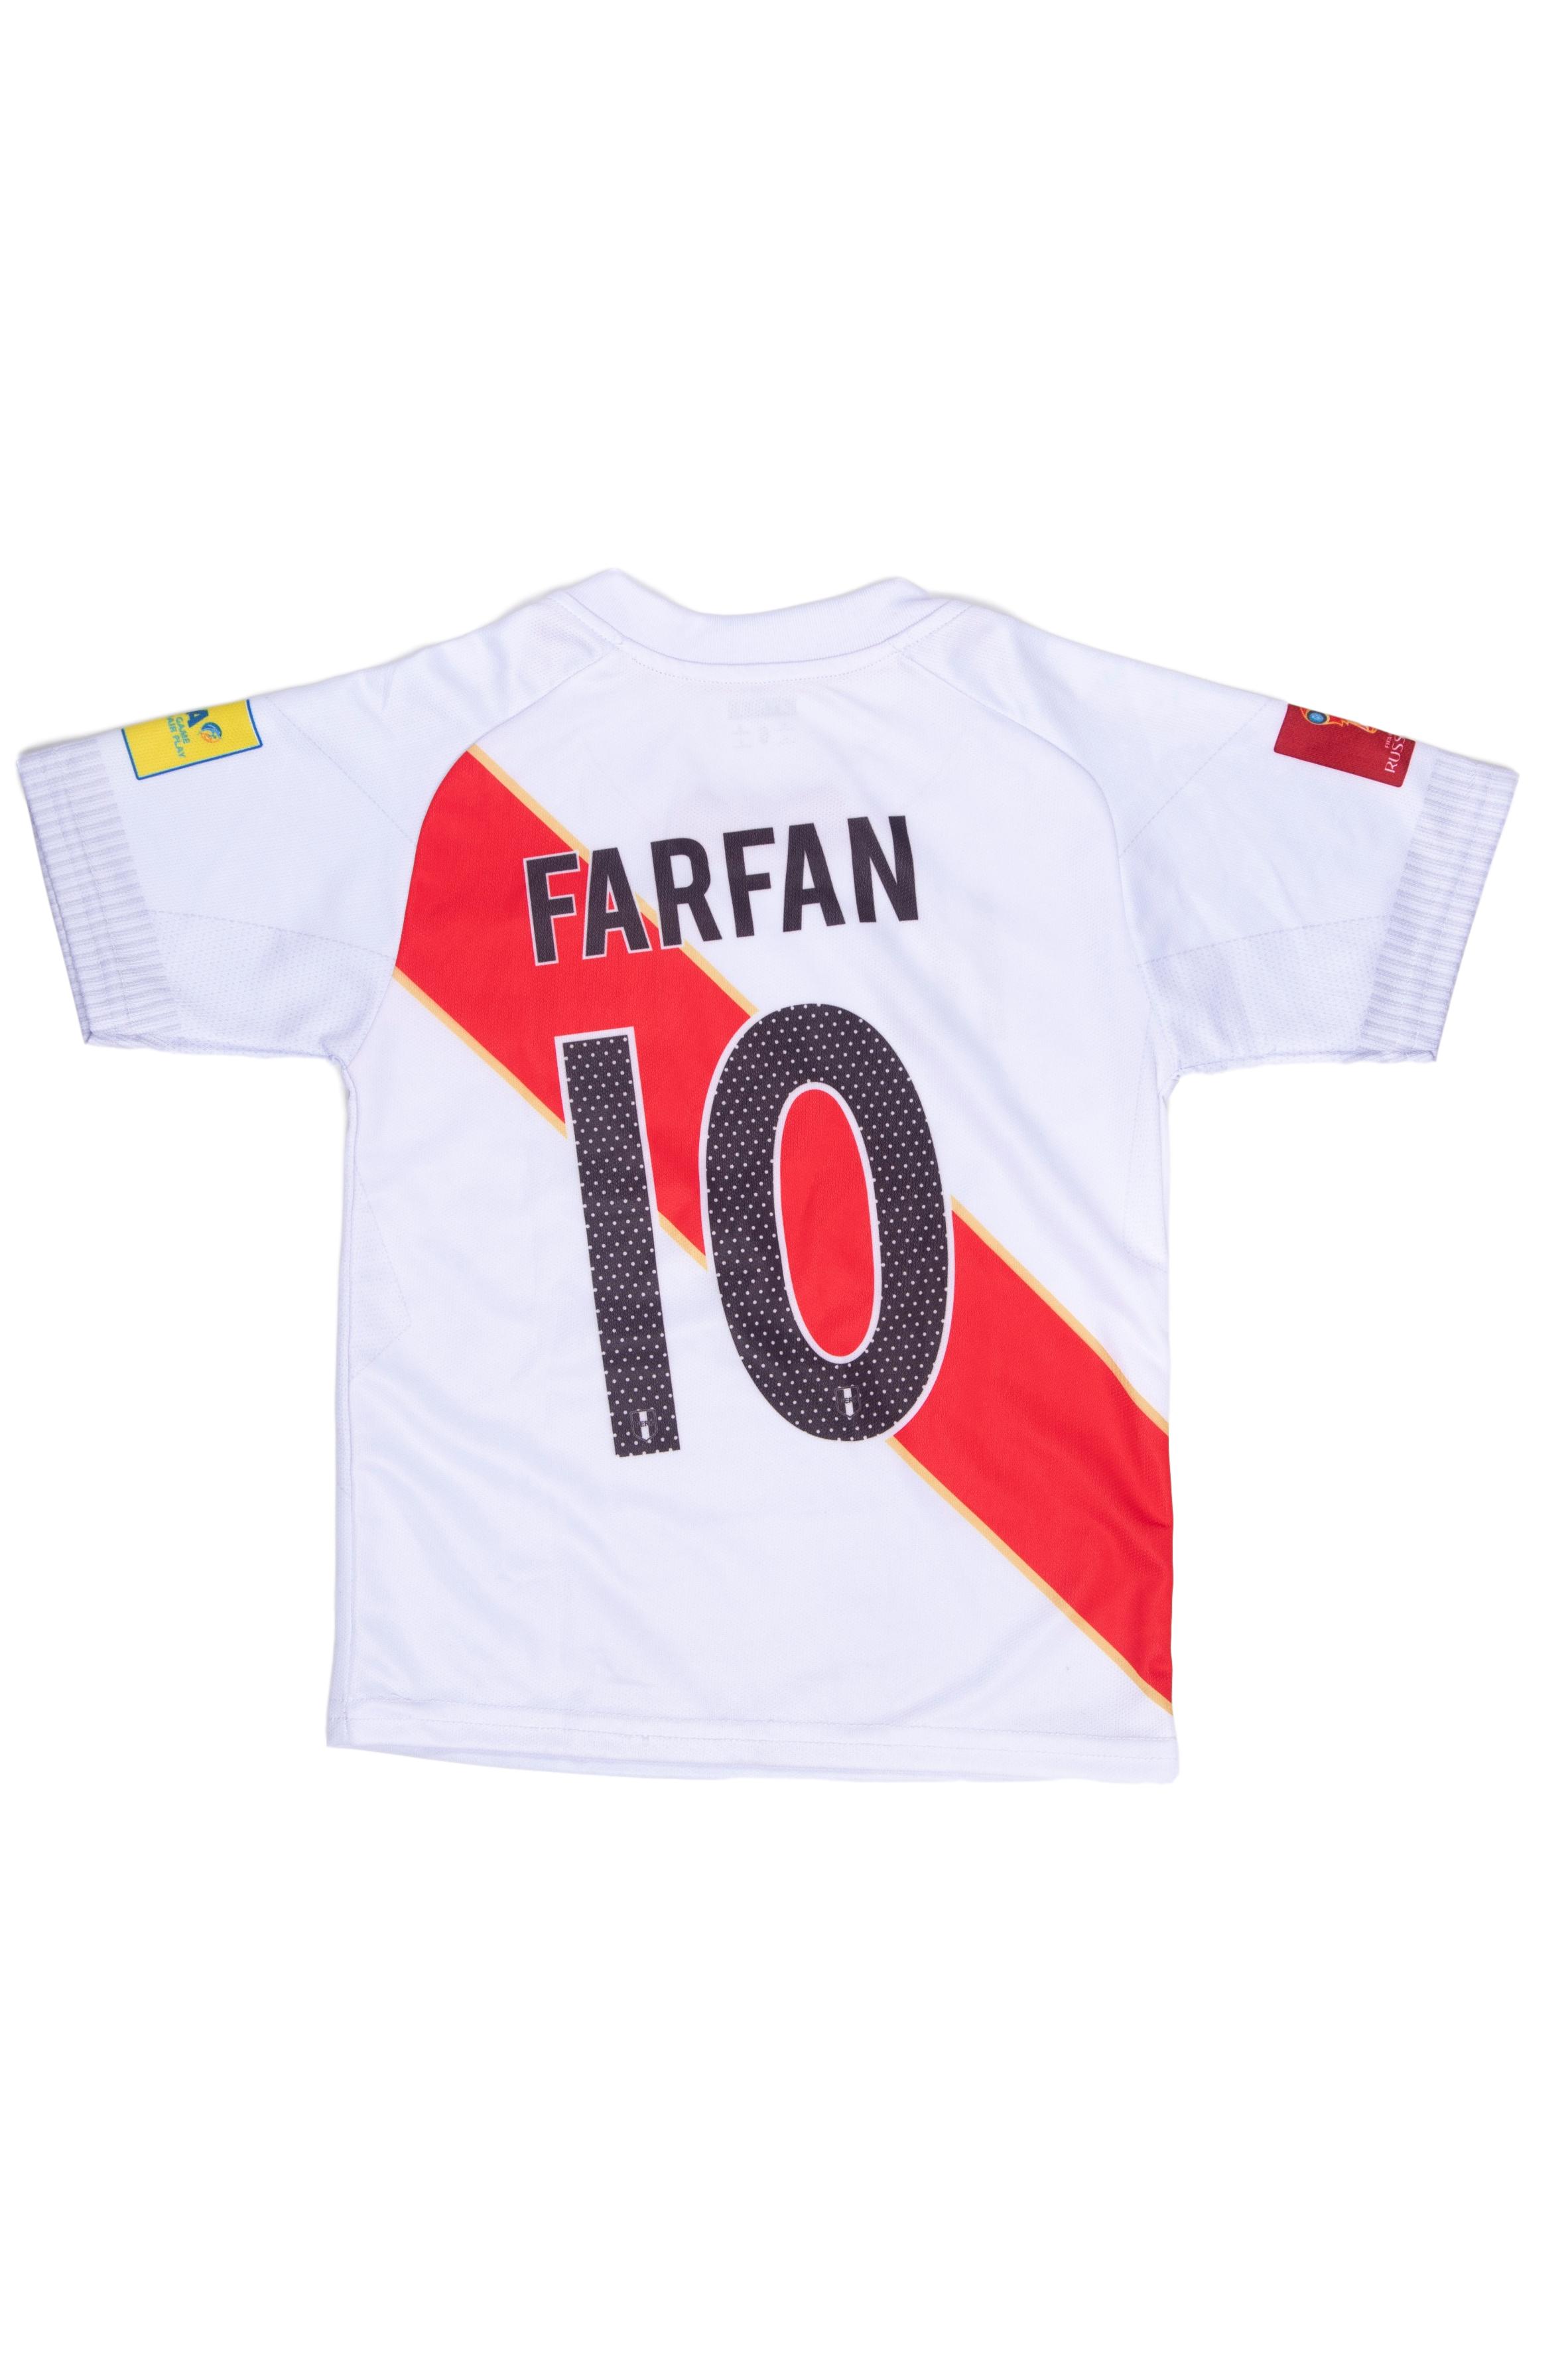 Polo de la seleccion de futbol (Farfan). Talla 6 en etiqueta - Ayala